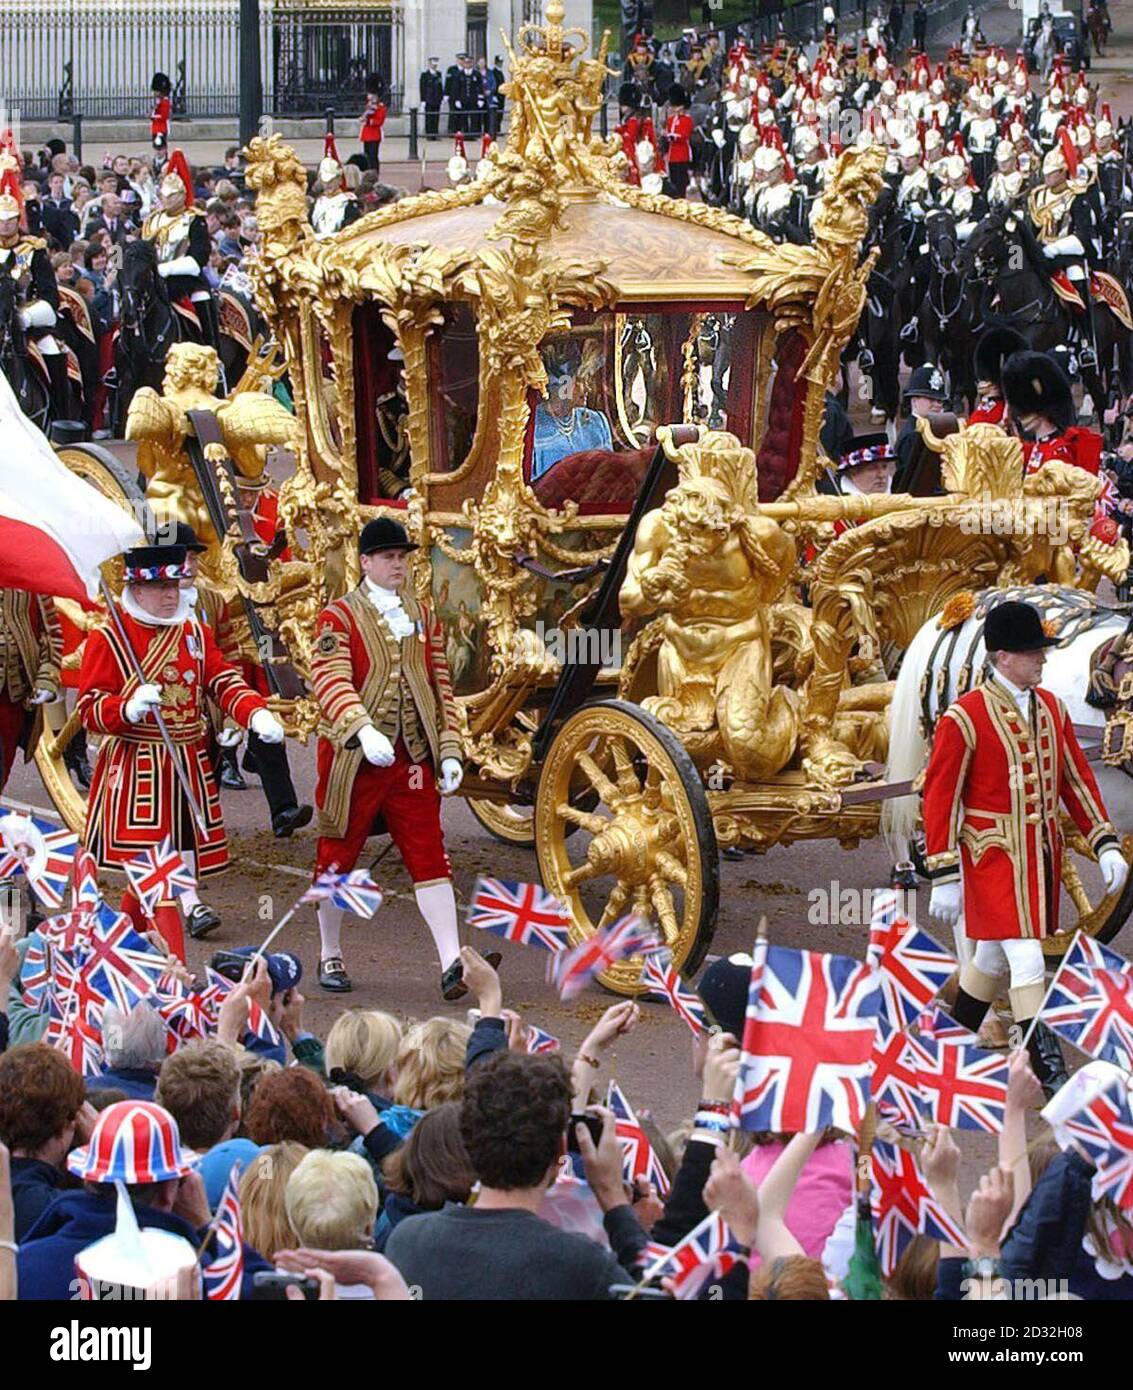 Die britische Königin Elizabeth II. Fährt im Gold State Bus vom Buckingham Palace zur St. Paul's Cathedral für einen Erntedankgottesdienst, um ihr goldenes Jubiläum zu feiern. * der Wagen wurde 1762 für König Georg III. Gebaut und wurde nur zweimal von der Königin benutzt - für ihre Krönung und ihr Silbernes Jubiläum. Später, nach dem Mittagessen in Guildhall in der City of London, wird sie eine Parade und Karneval entlang der Mall beobachten. Am Montagabend versammelten sich mehr als eine Million Menschen im Zentrum Londons, um das Konzert der Party im Palast zu hören und ein spektakuläres Feuerwerk zu sehen. Stockfoto